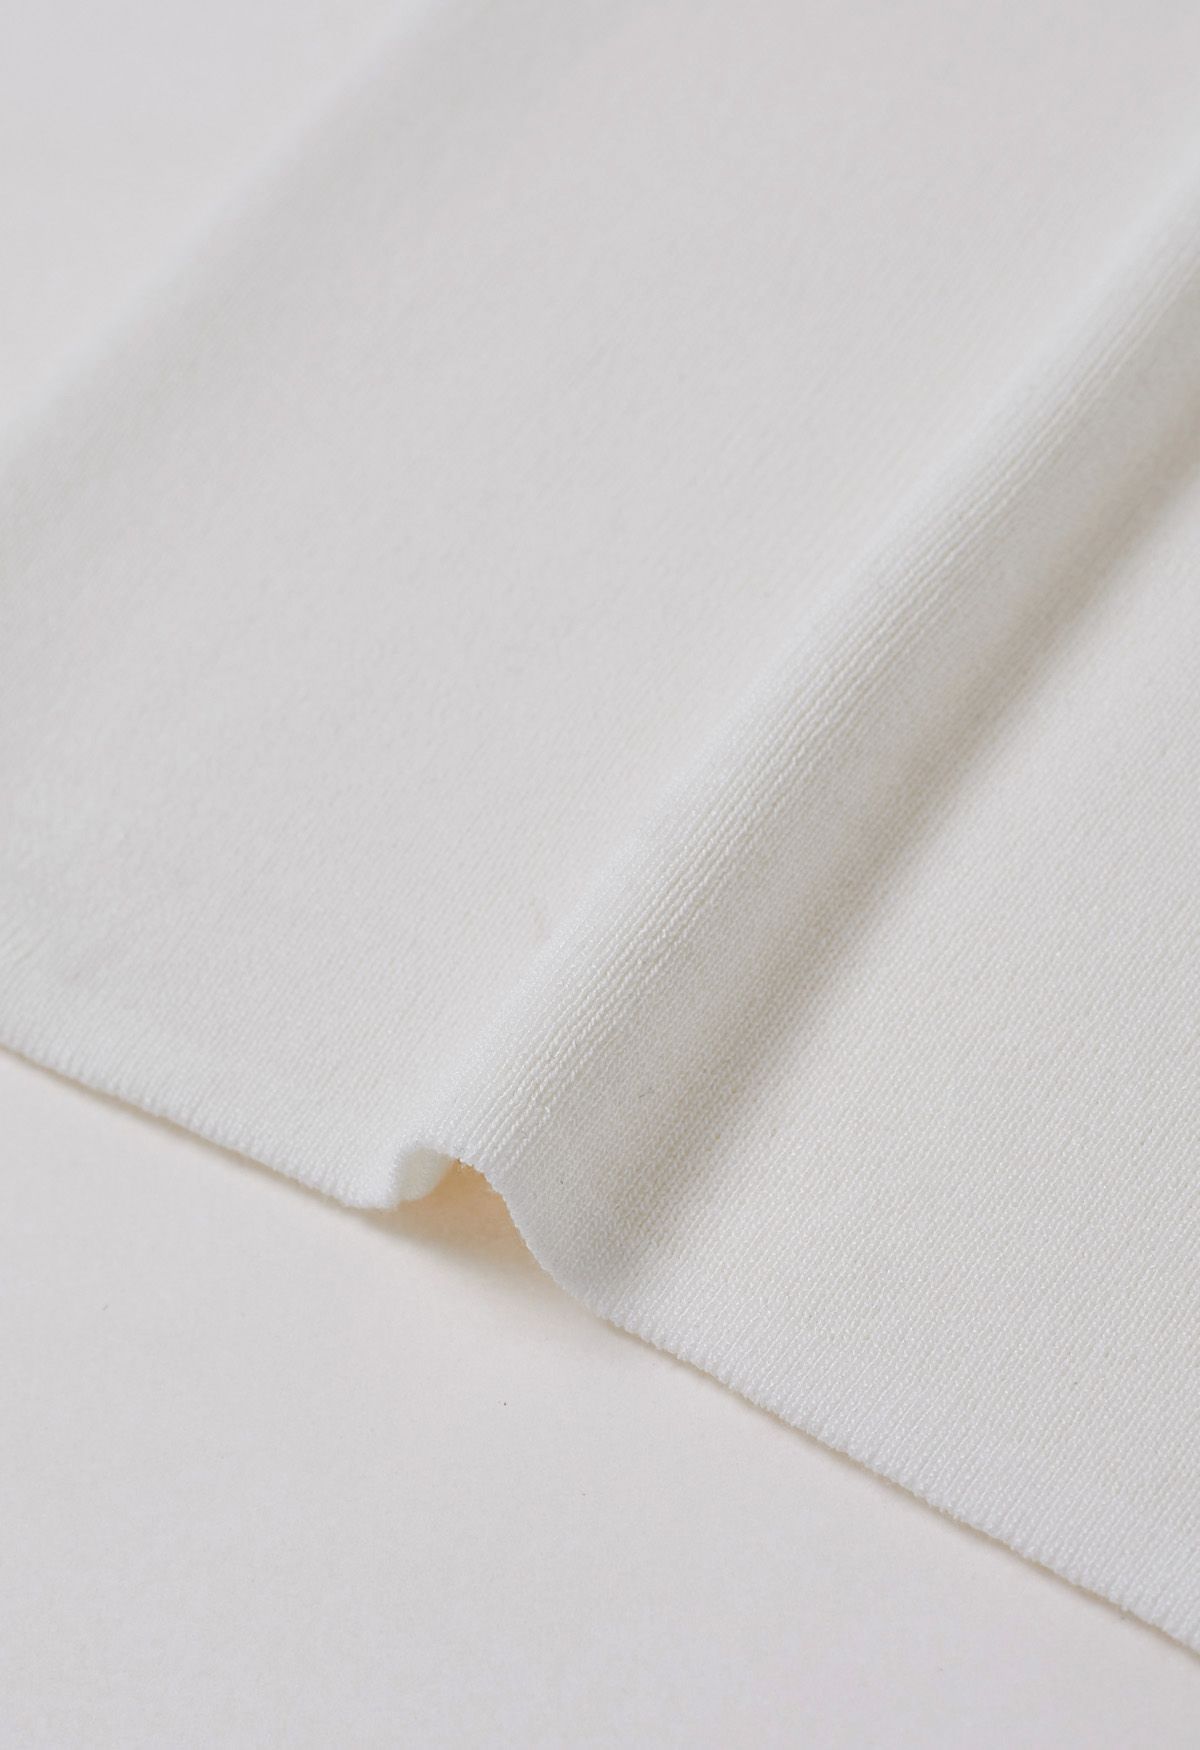 Solid Split Strap Knit Tank Top in White